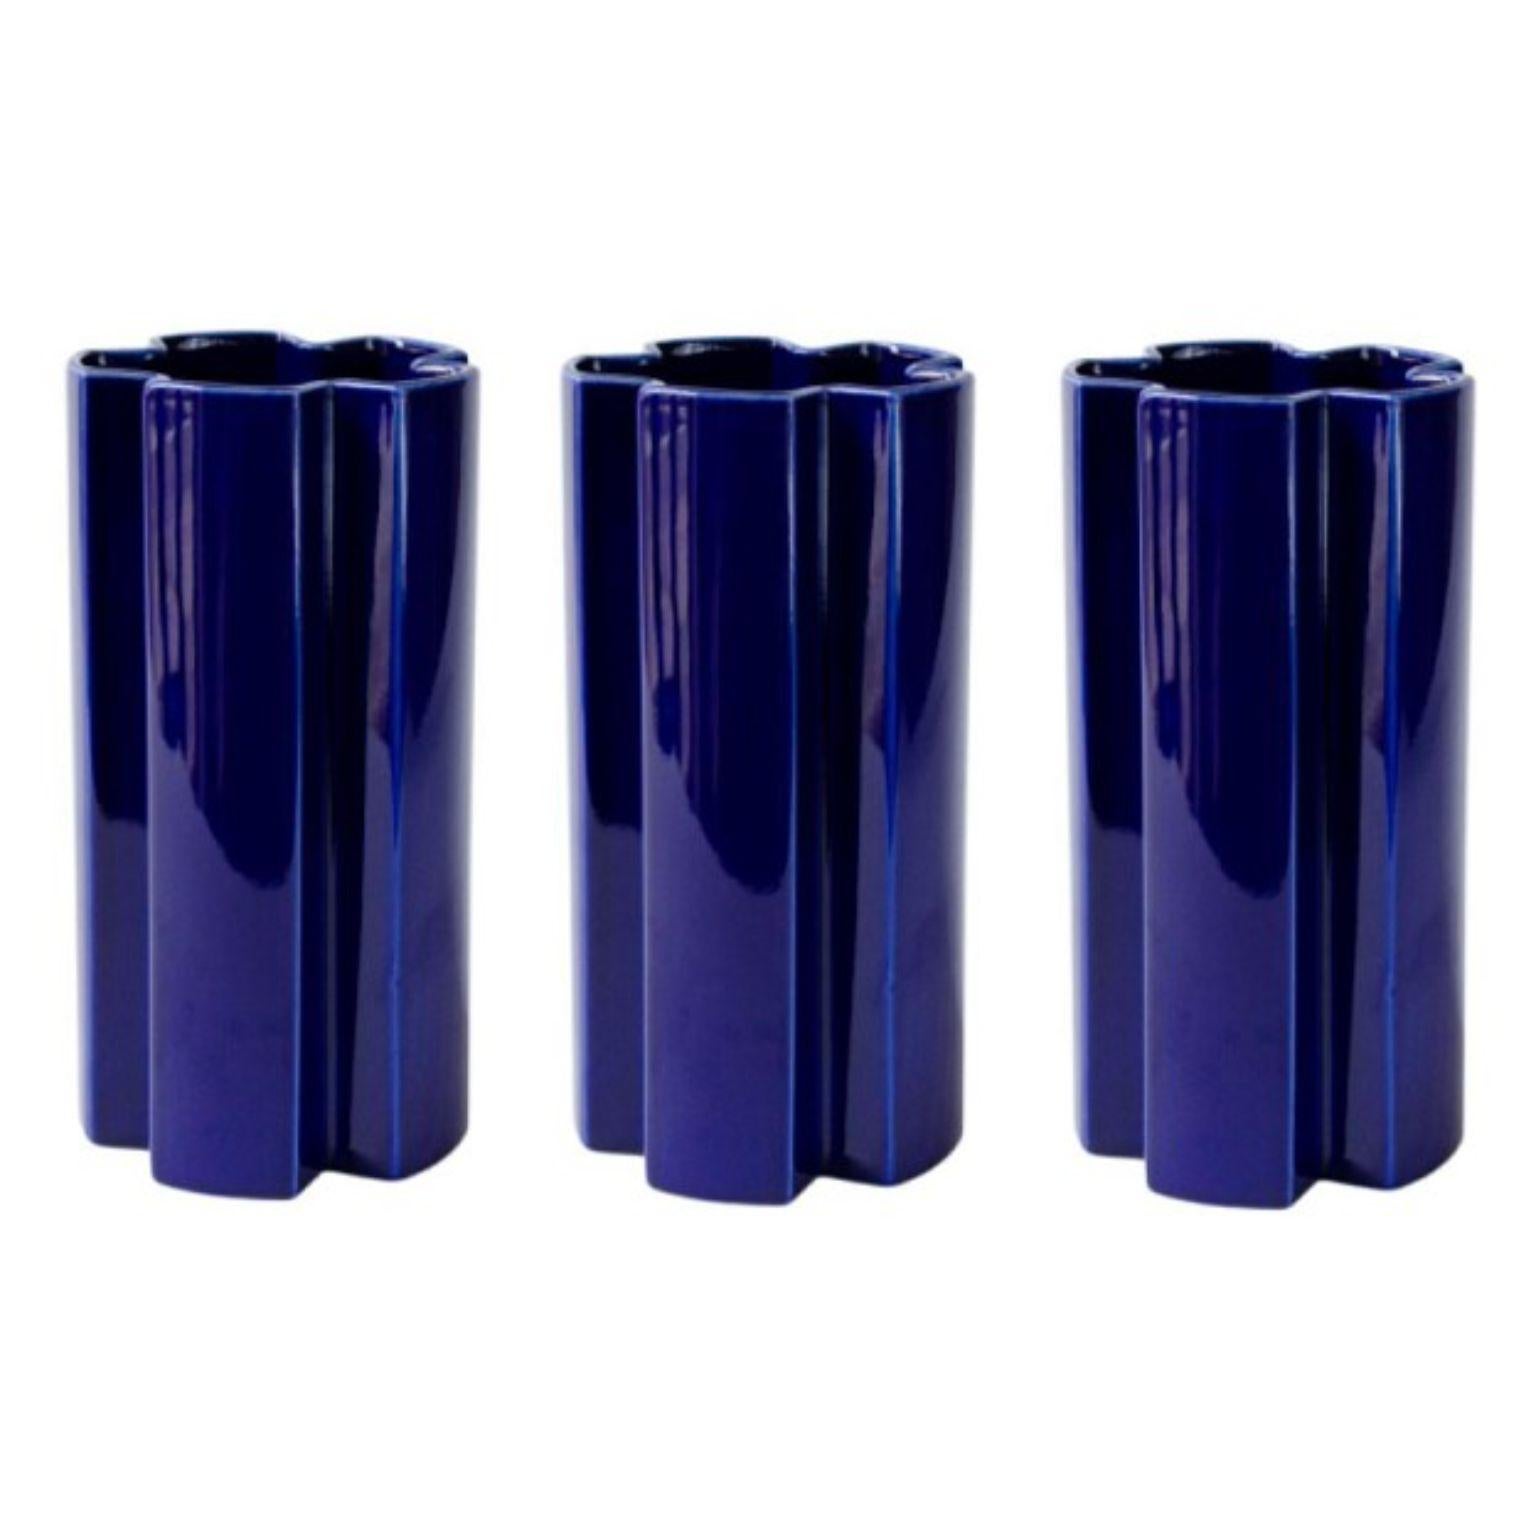 Set aus 3 großen blauen KYO-Sternvasen aus Keramik von Mazo Design
Abmessungen: D 12 x H 23,5 cm. 
MATERIAL: glasierte Keramik.

Die neue Kollektion von mazo ist sowohl funktional als auch skulptural und gleichzeitig sehr skandinavisch und